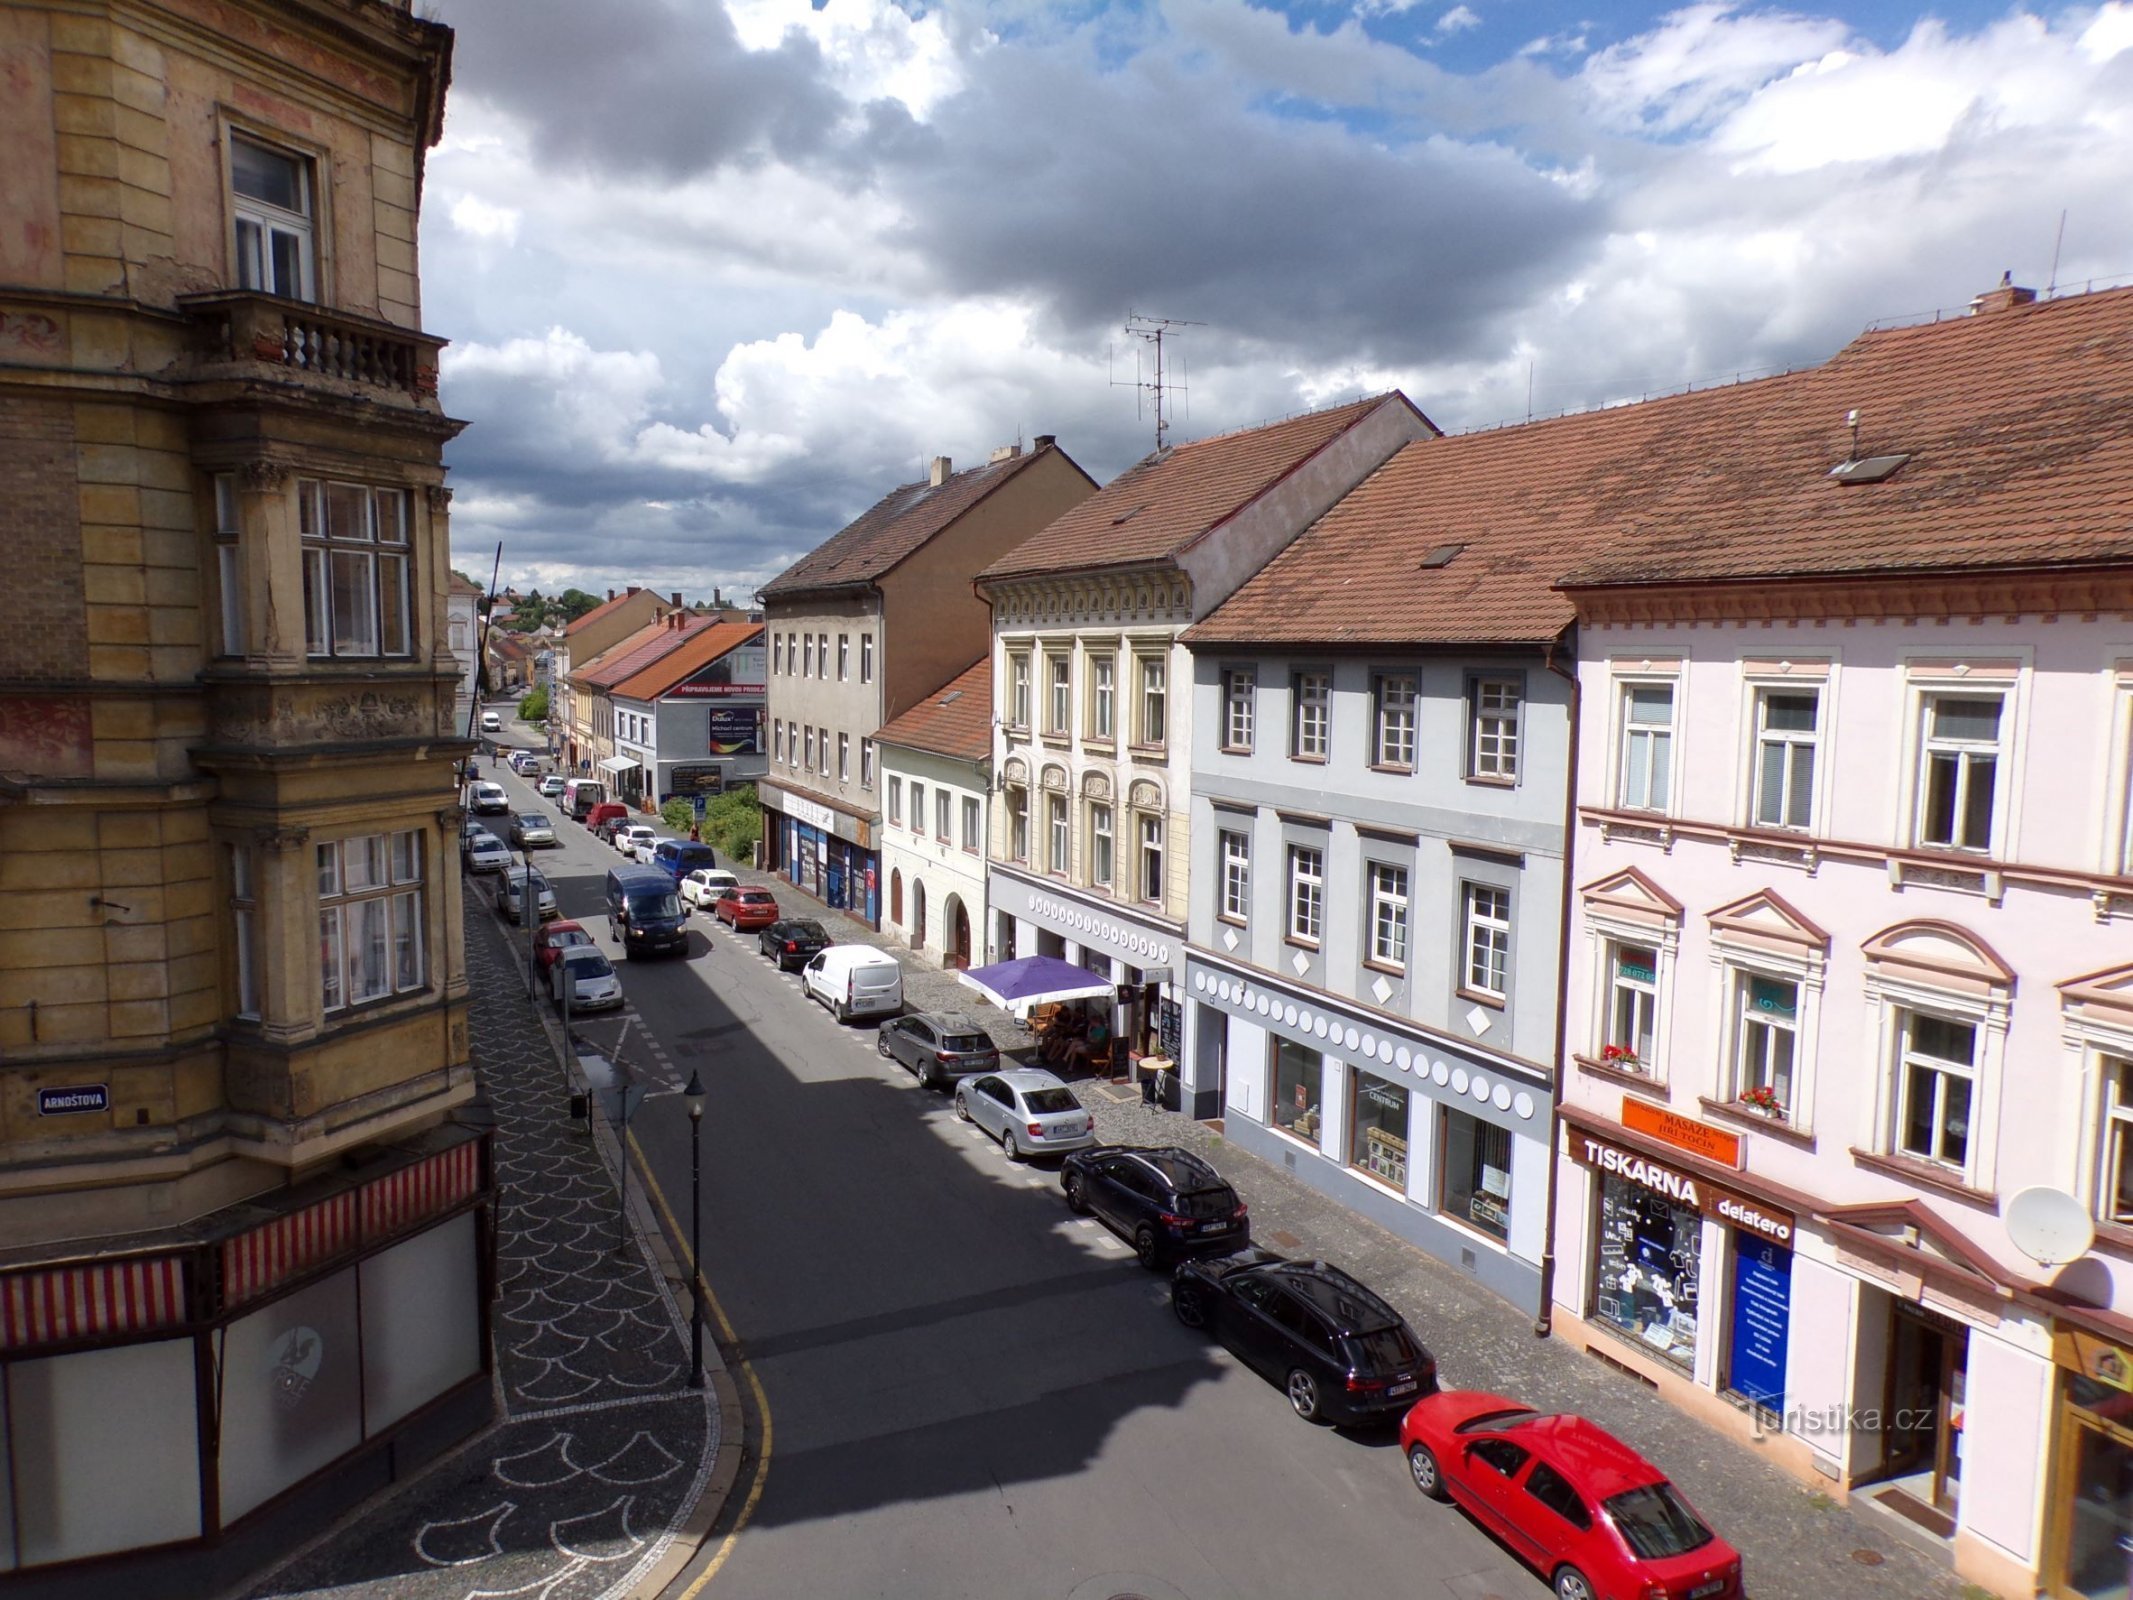 View of Jana z Dražice square (Roudnice nad Labem, 9.7.2021/XNUMX/XNUMX)